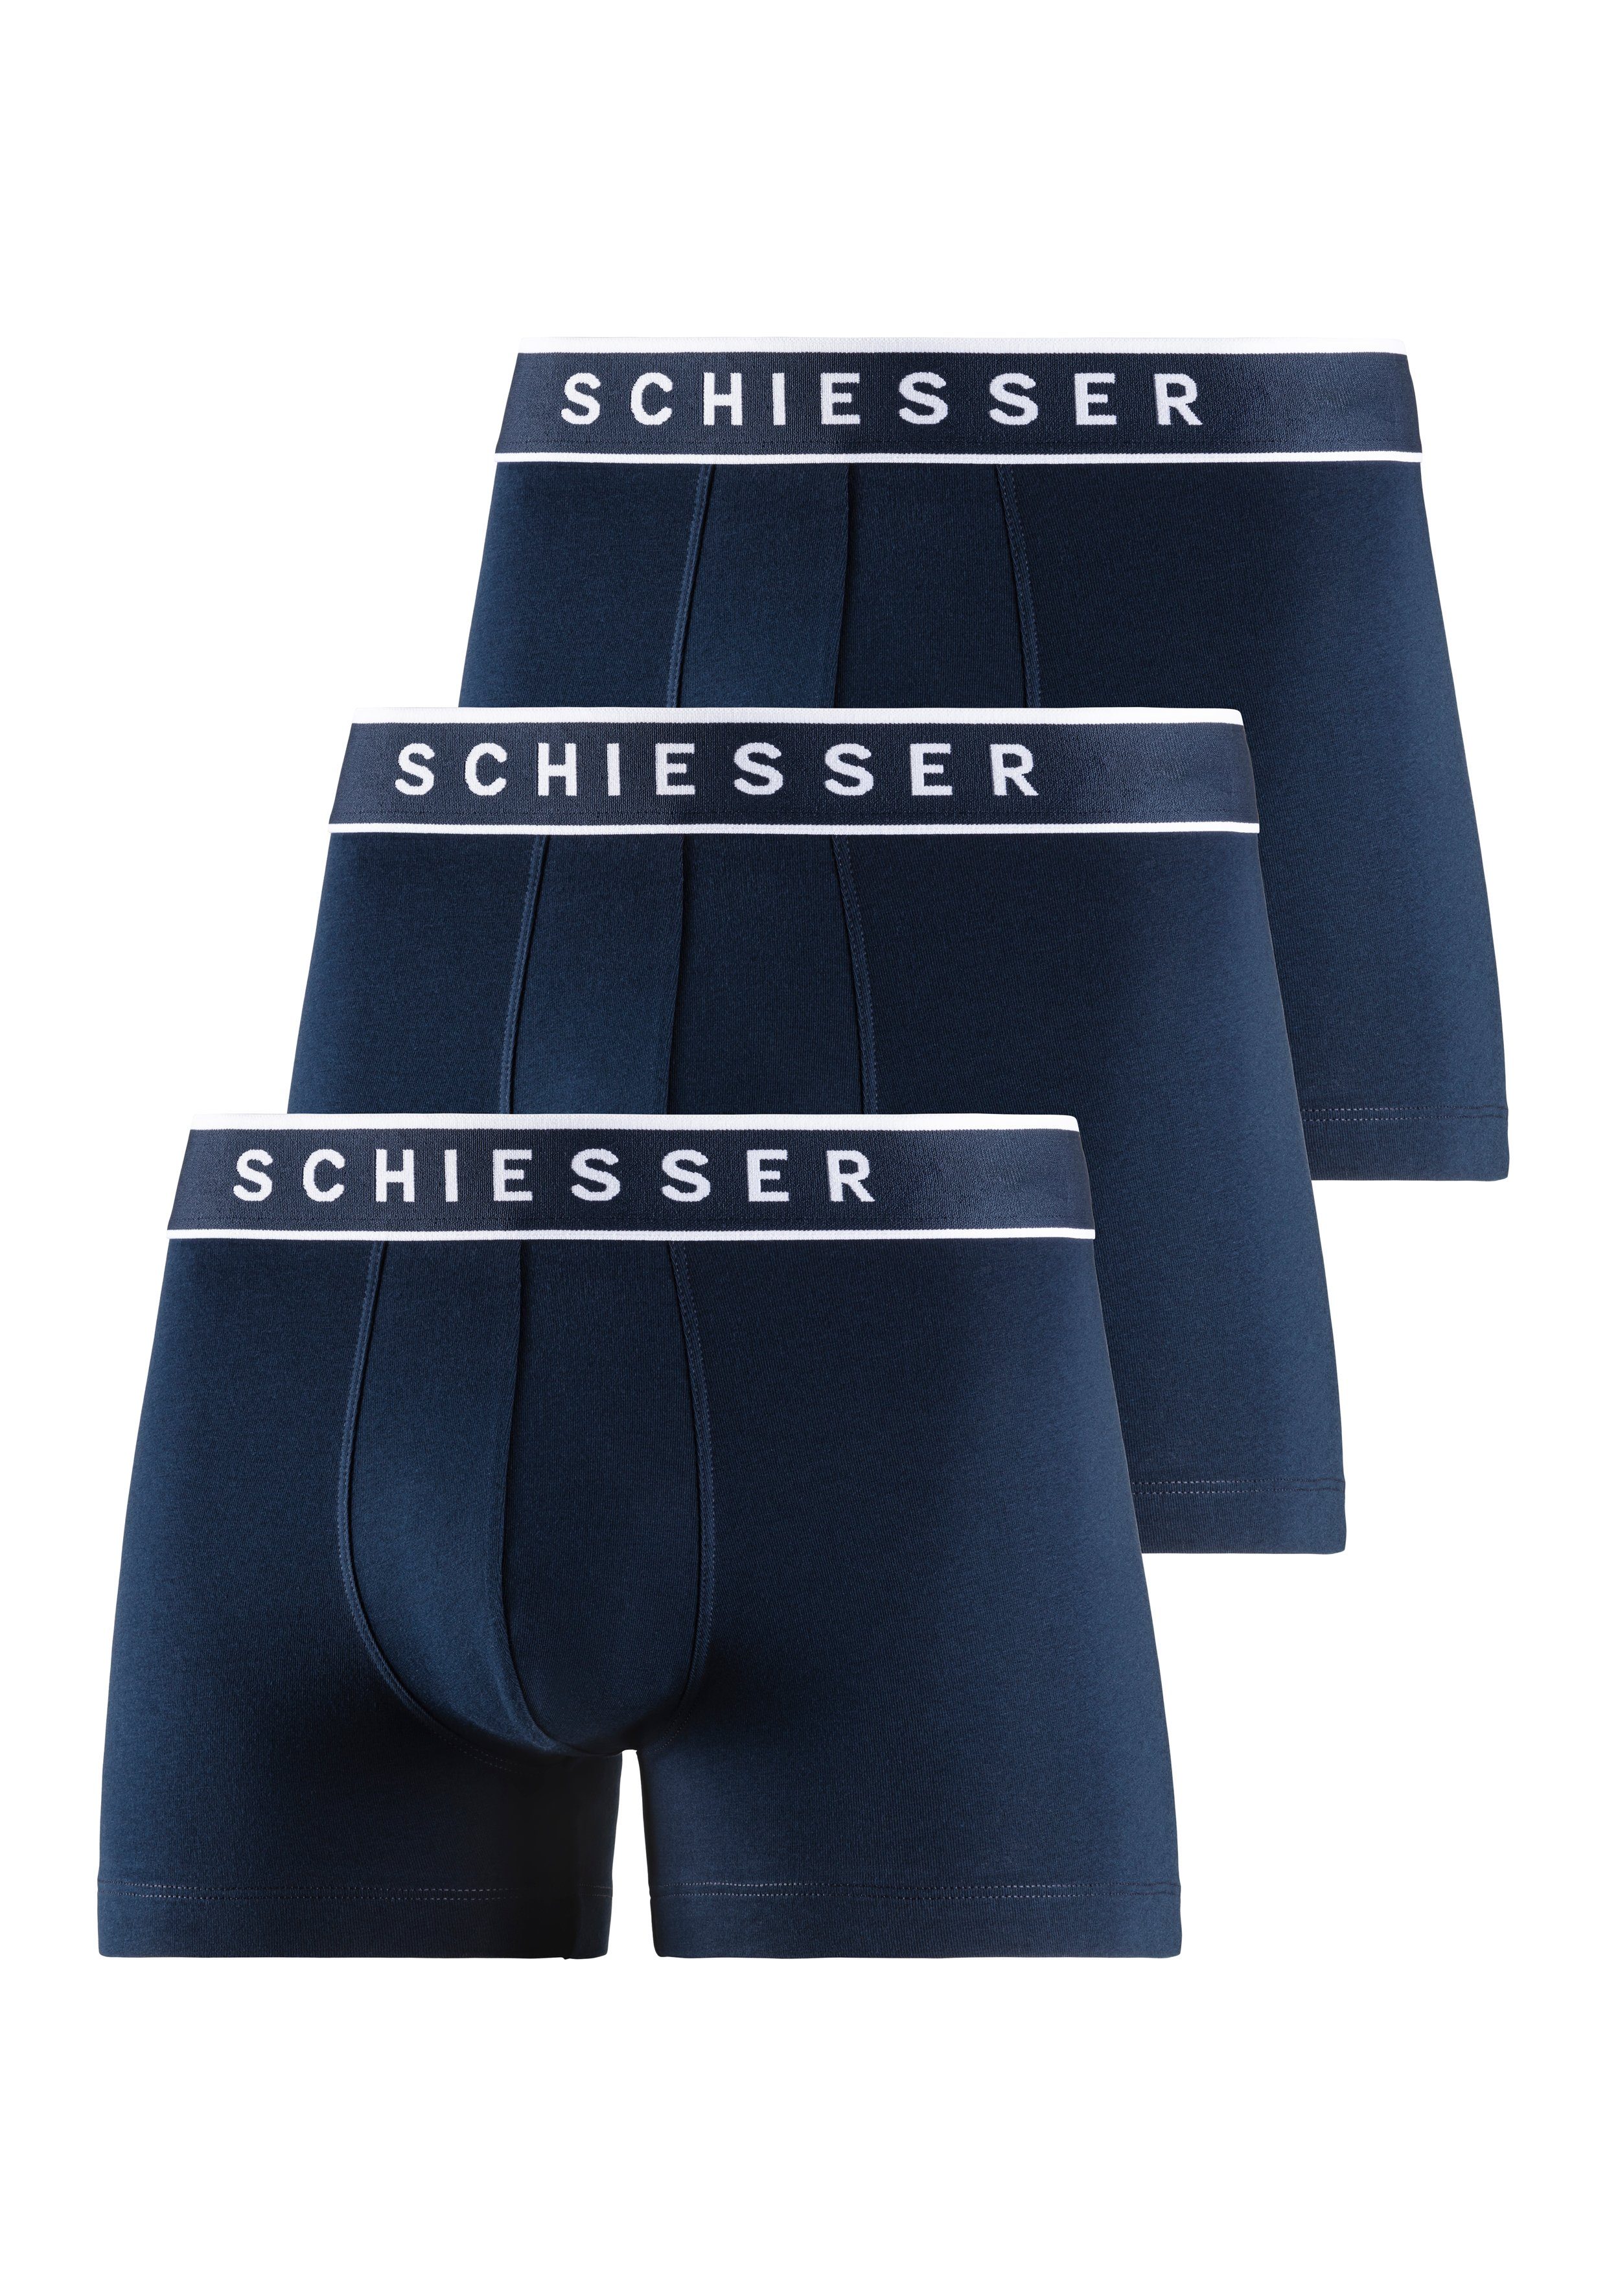 Schiesser Boxer (3er-Pack) mit Logobund navy, navy navy